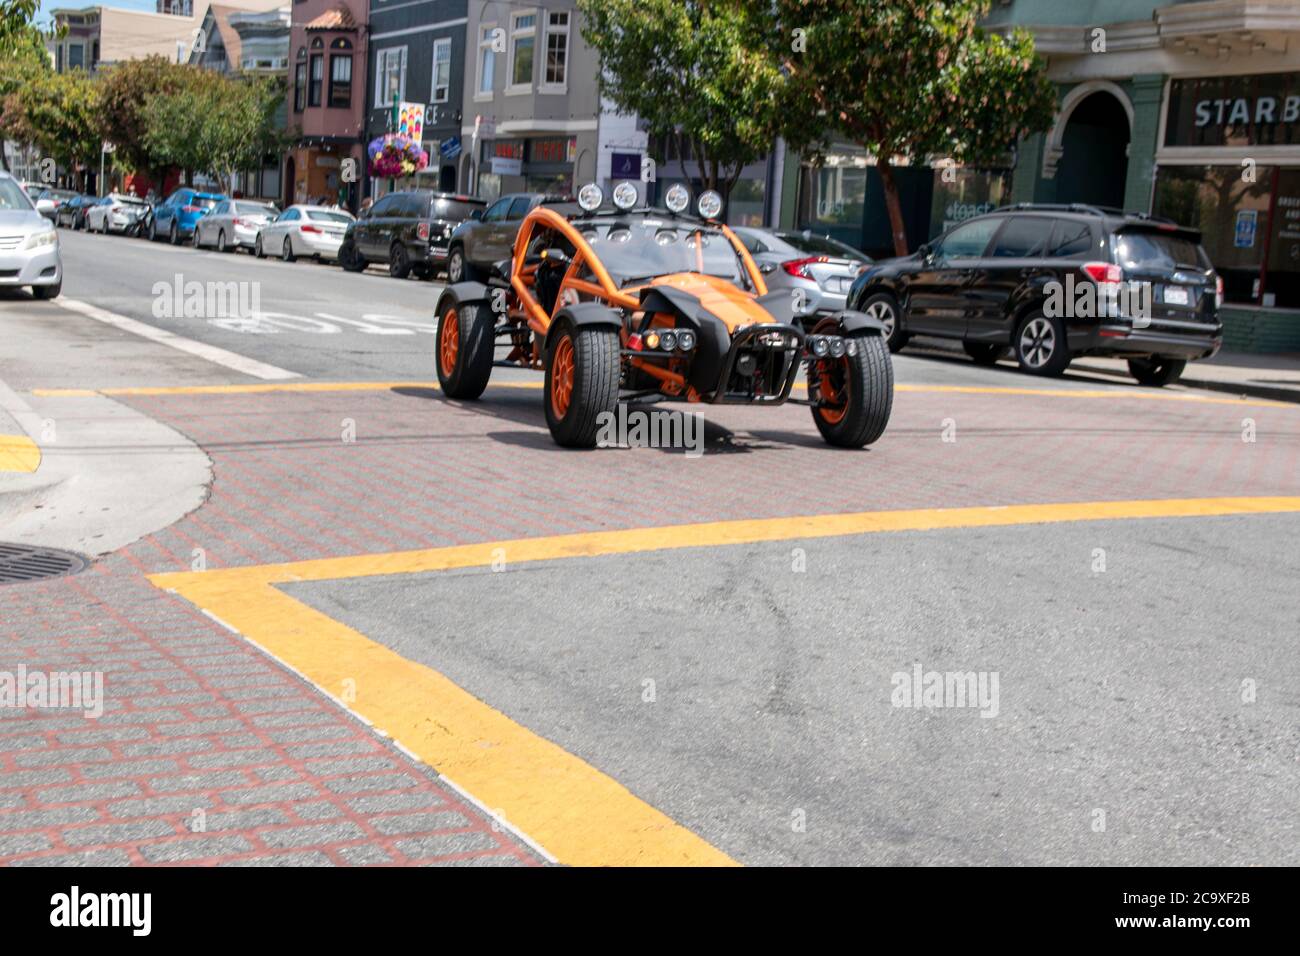 Qualcuno guida questo veicolo fuoristrada nel quartiere Noe Valley di San Francisco, California, USA. Foto Stock